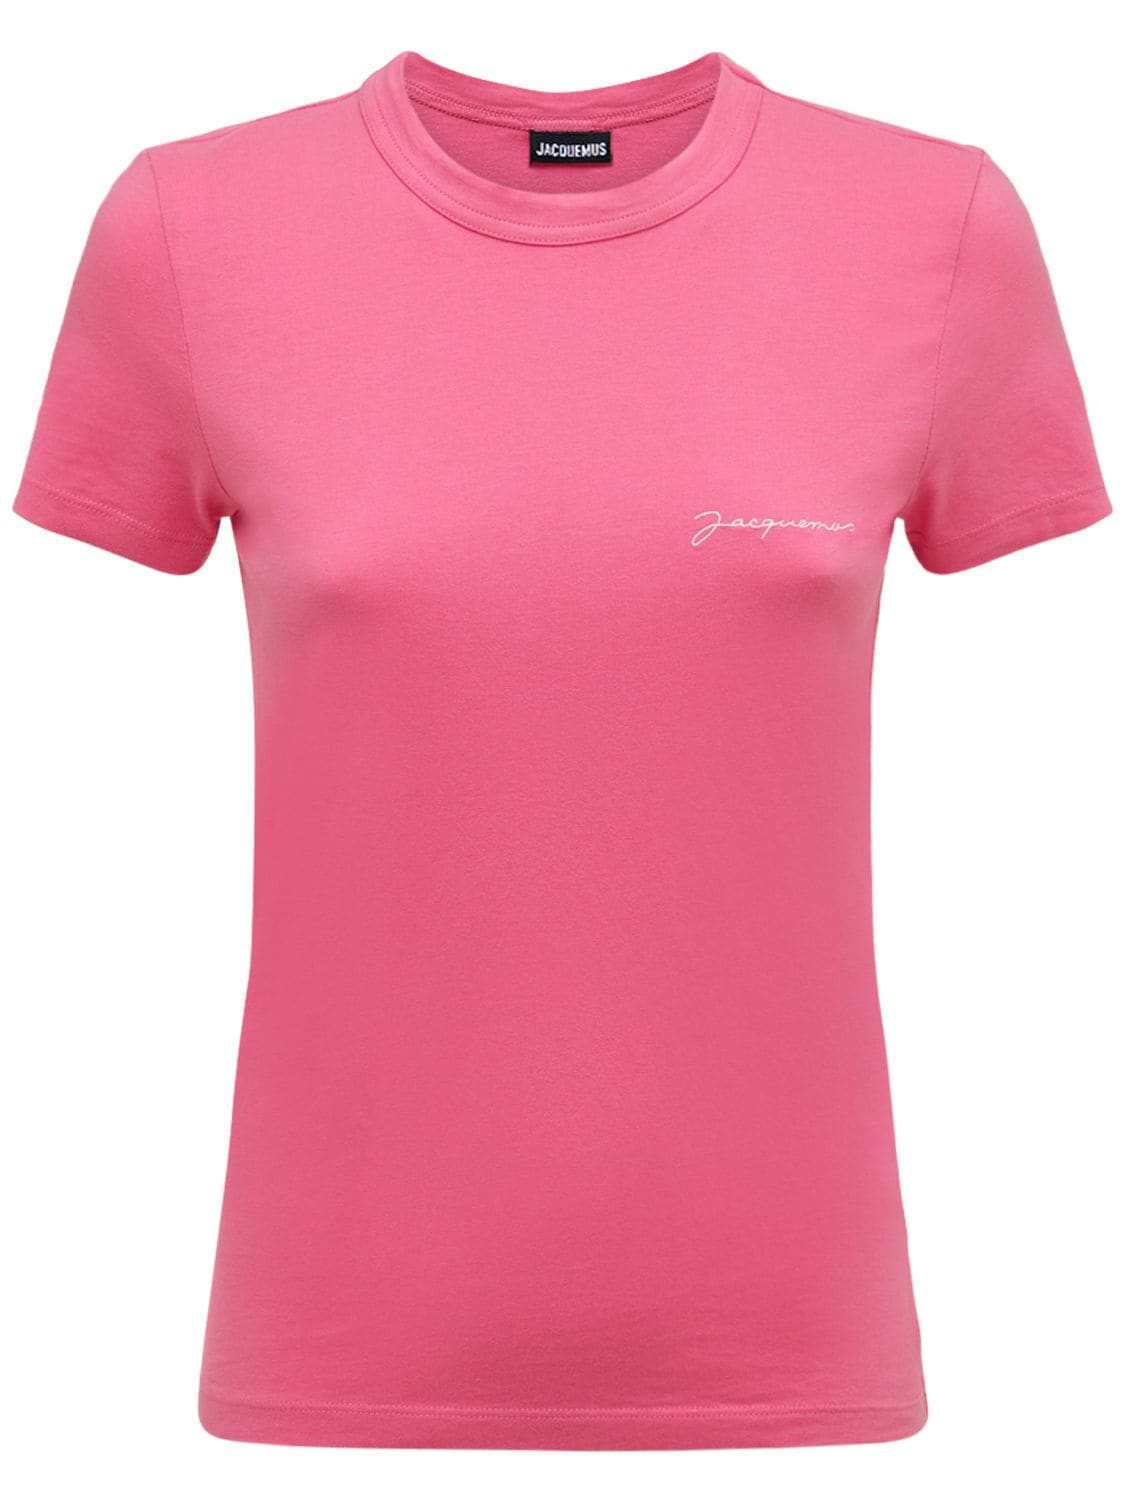 Le Tshirt Jacquemus Logo Cotton Jersey